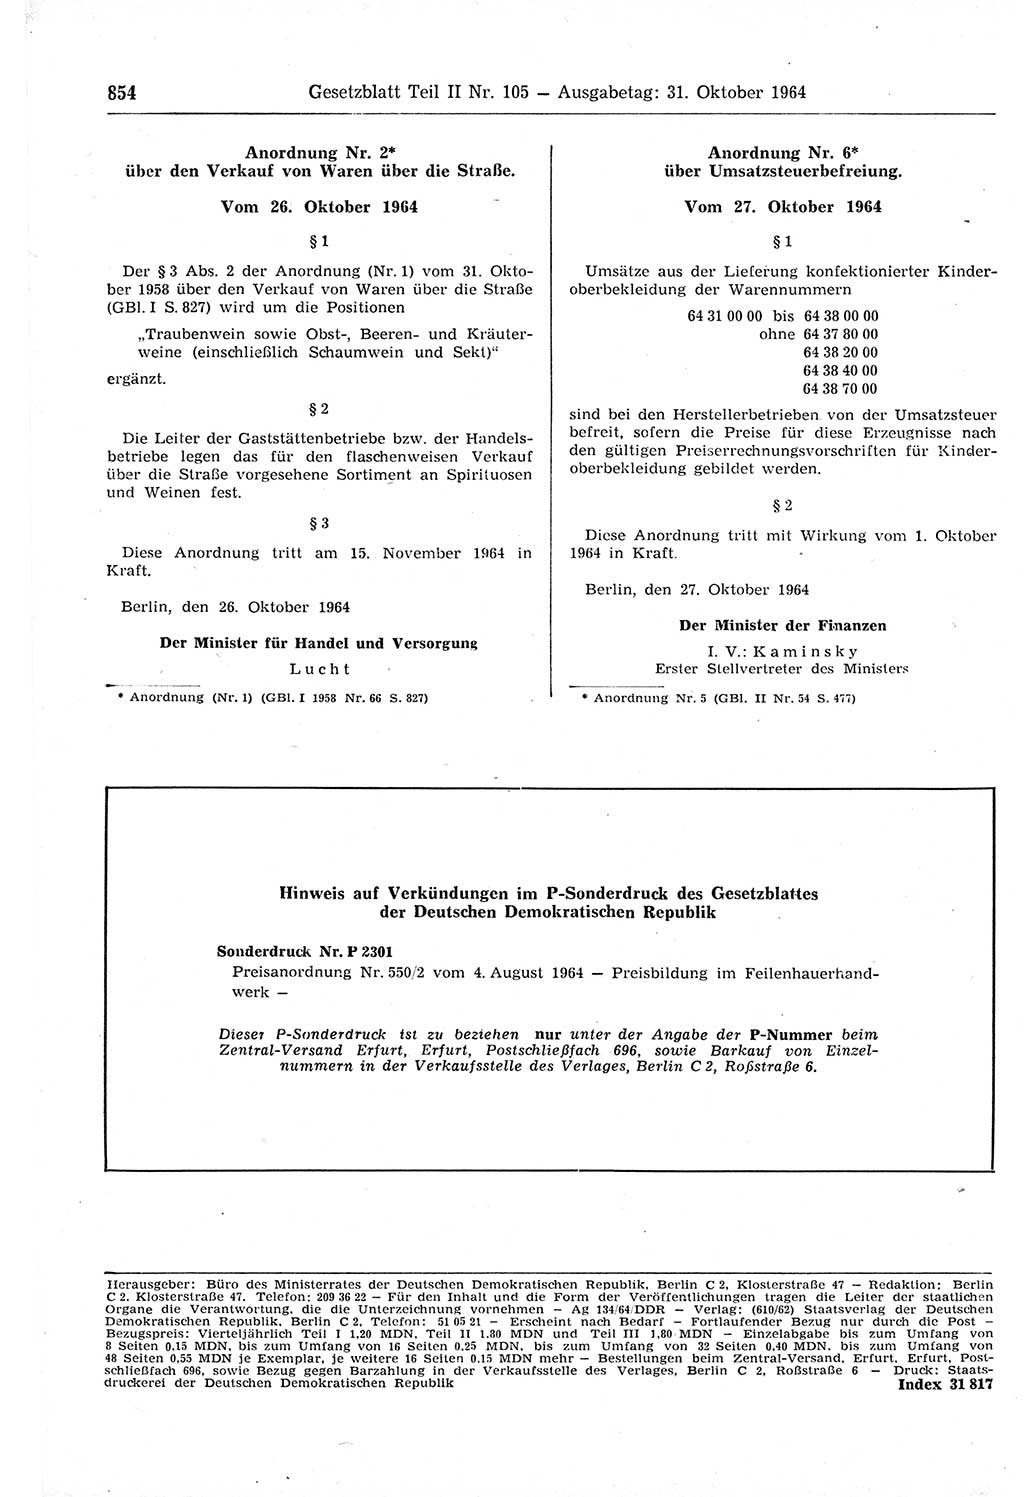 Gesetzblatt (GBl.) der Deutschen Demokratischen Republik (DDR) Teil ⅠⅠ 1964, Seite 854 (GBl. DDR ⅠⅠ 1964, S. 854)